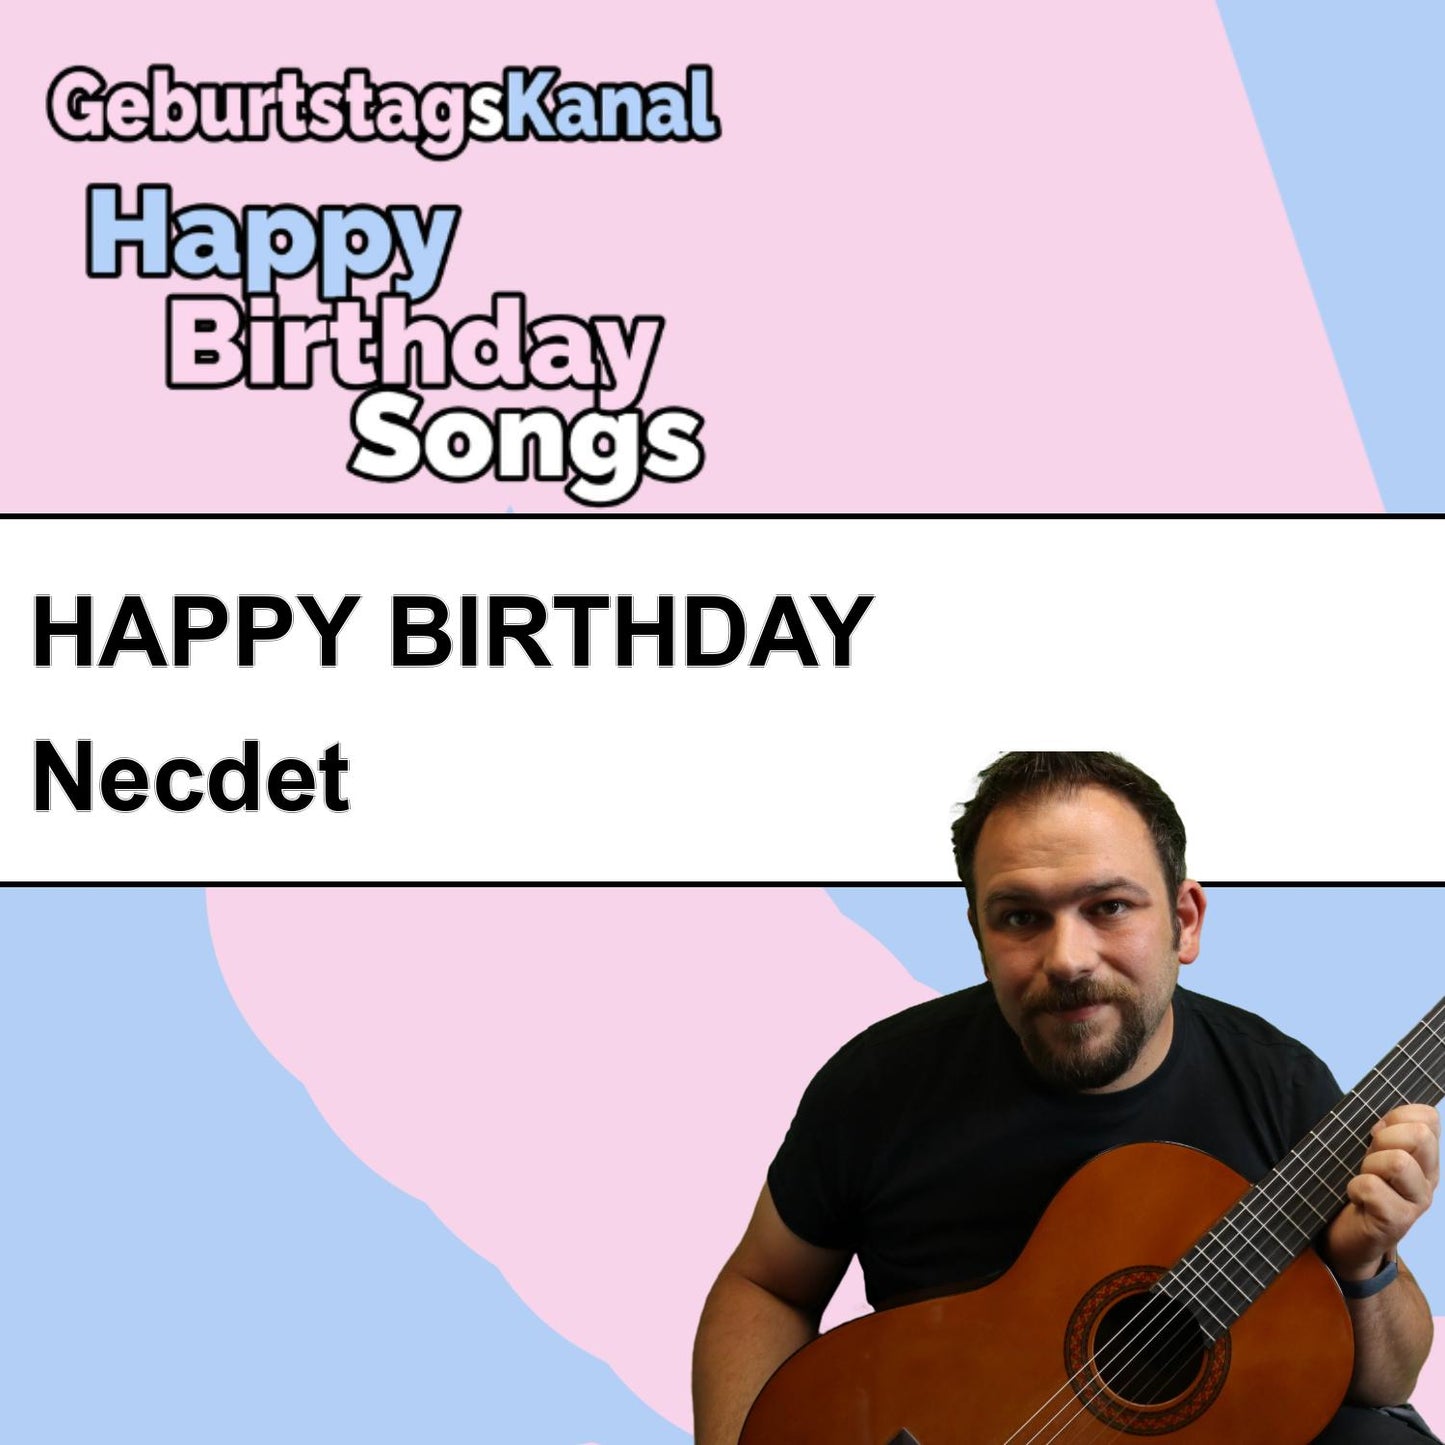 Produktbild Happy Birthday to you Necdet mit Wunschgrußbotschaft